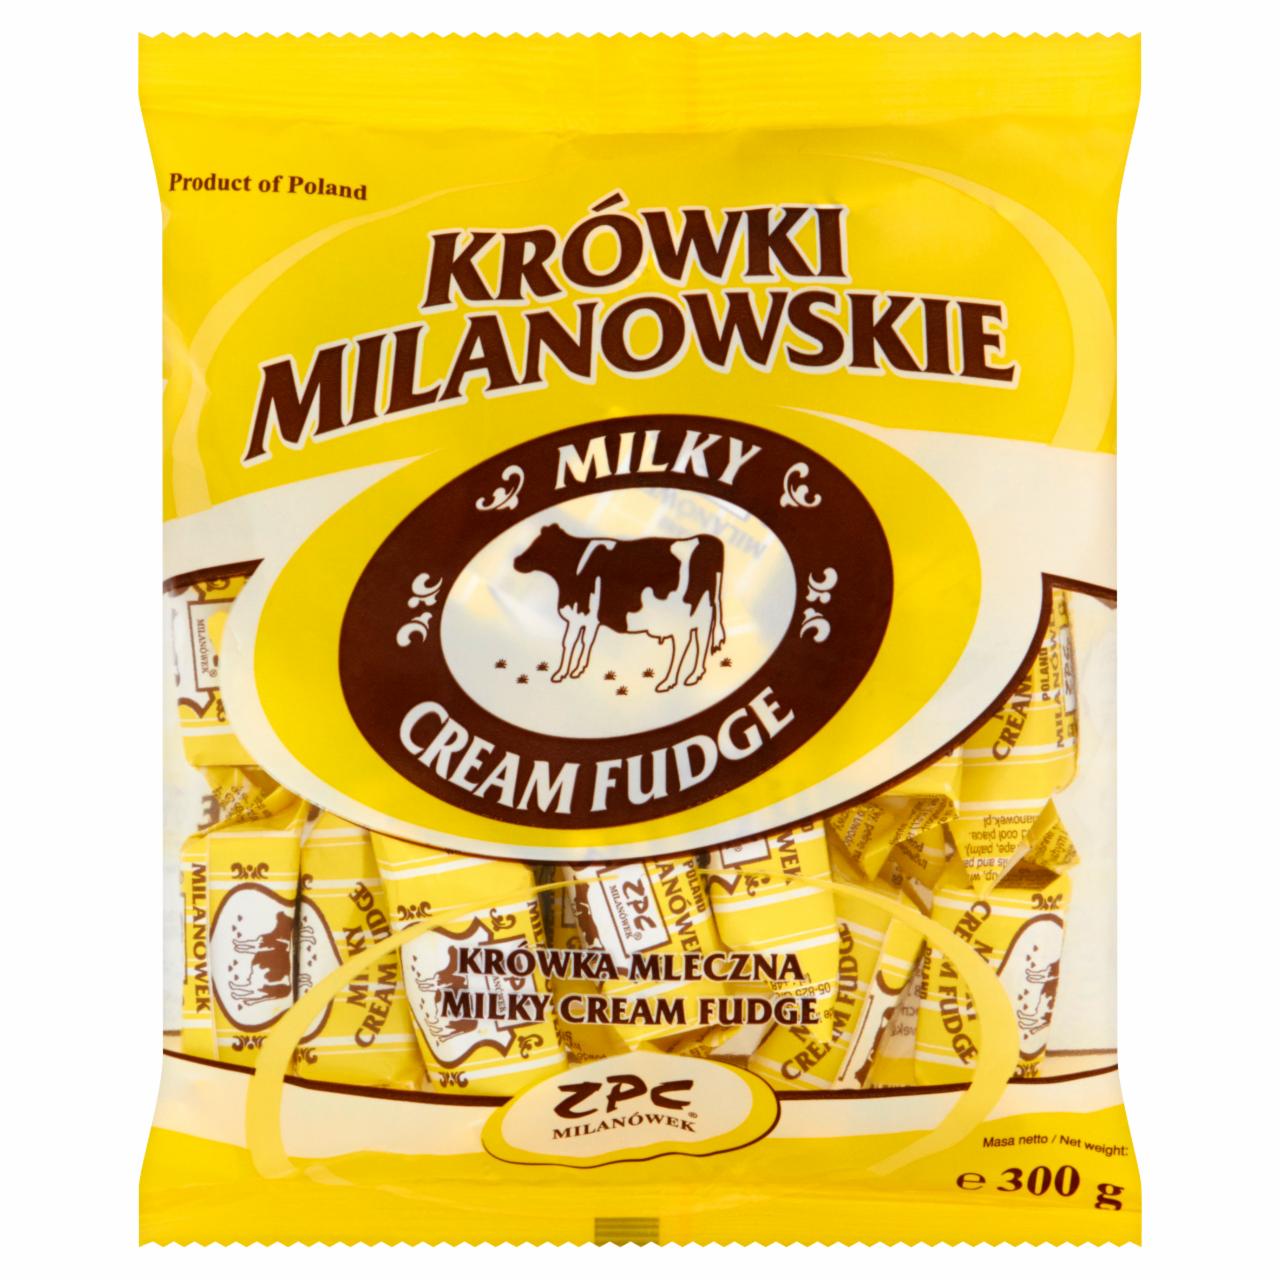 Zdjęcia - ZPC Milanówek Krówki milanowskie mleczne 300 g